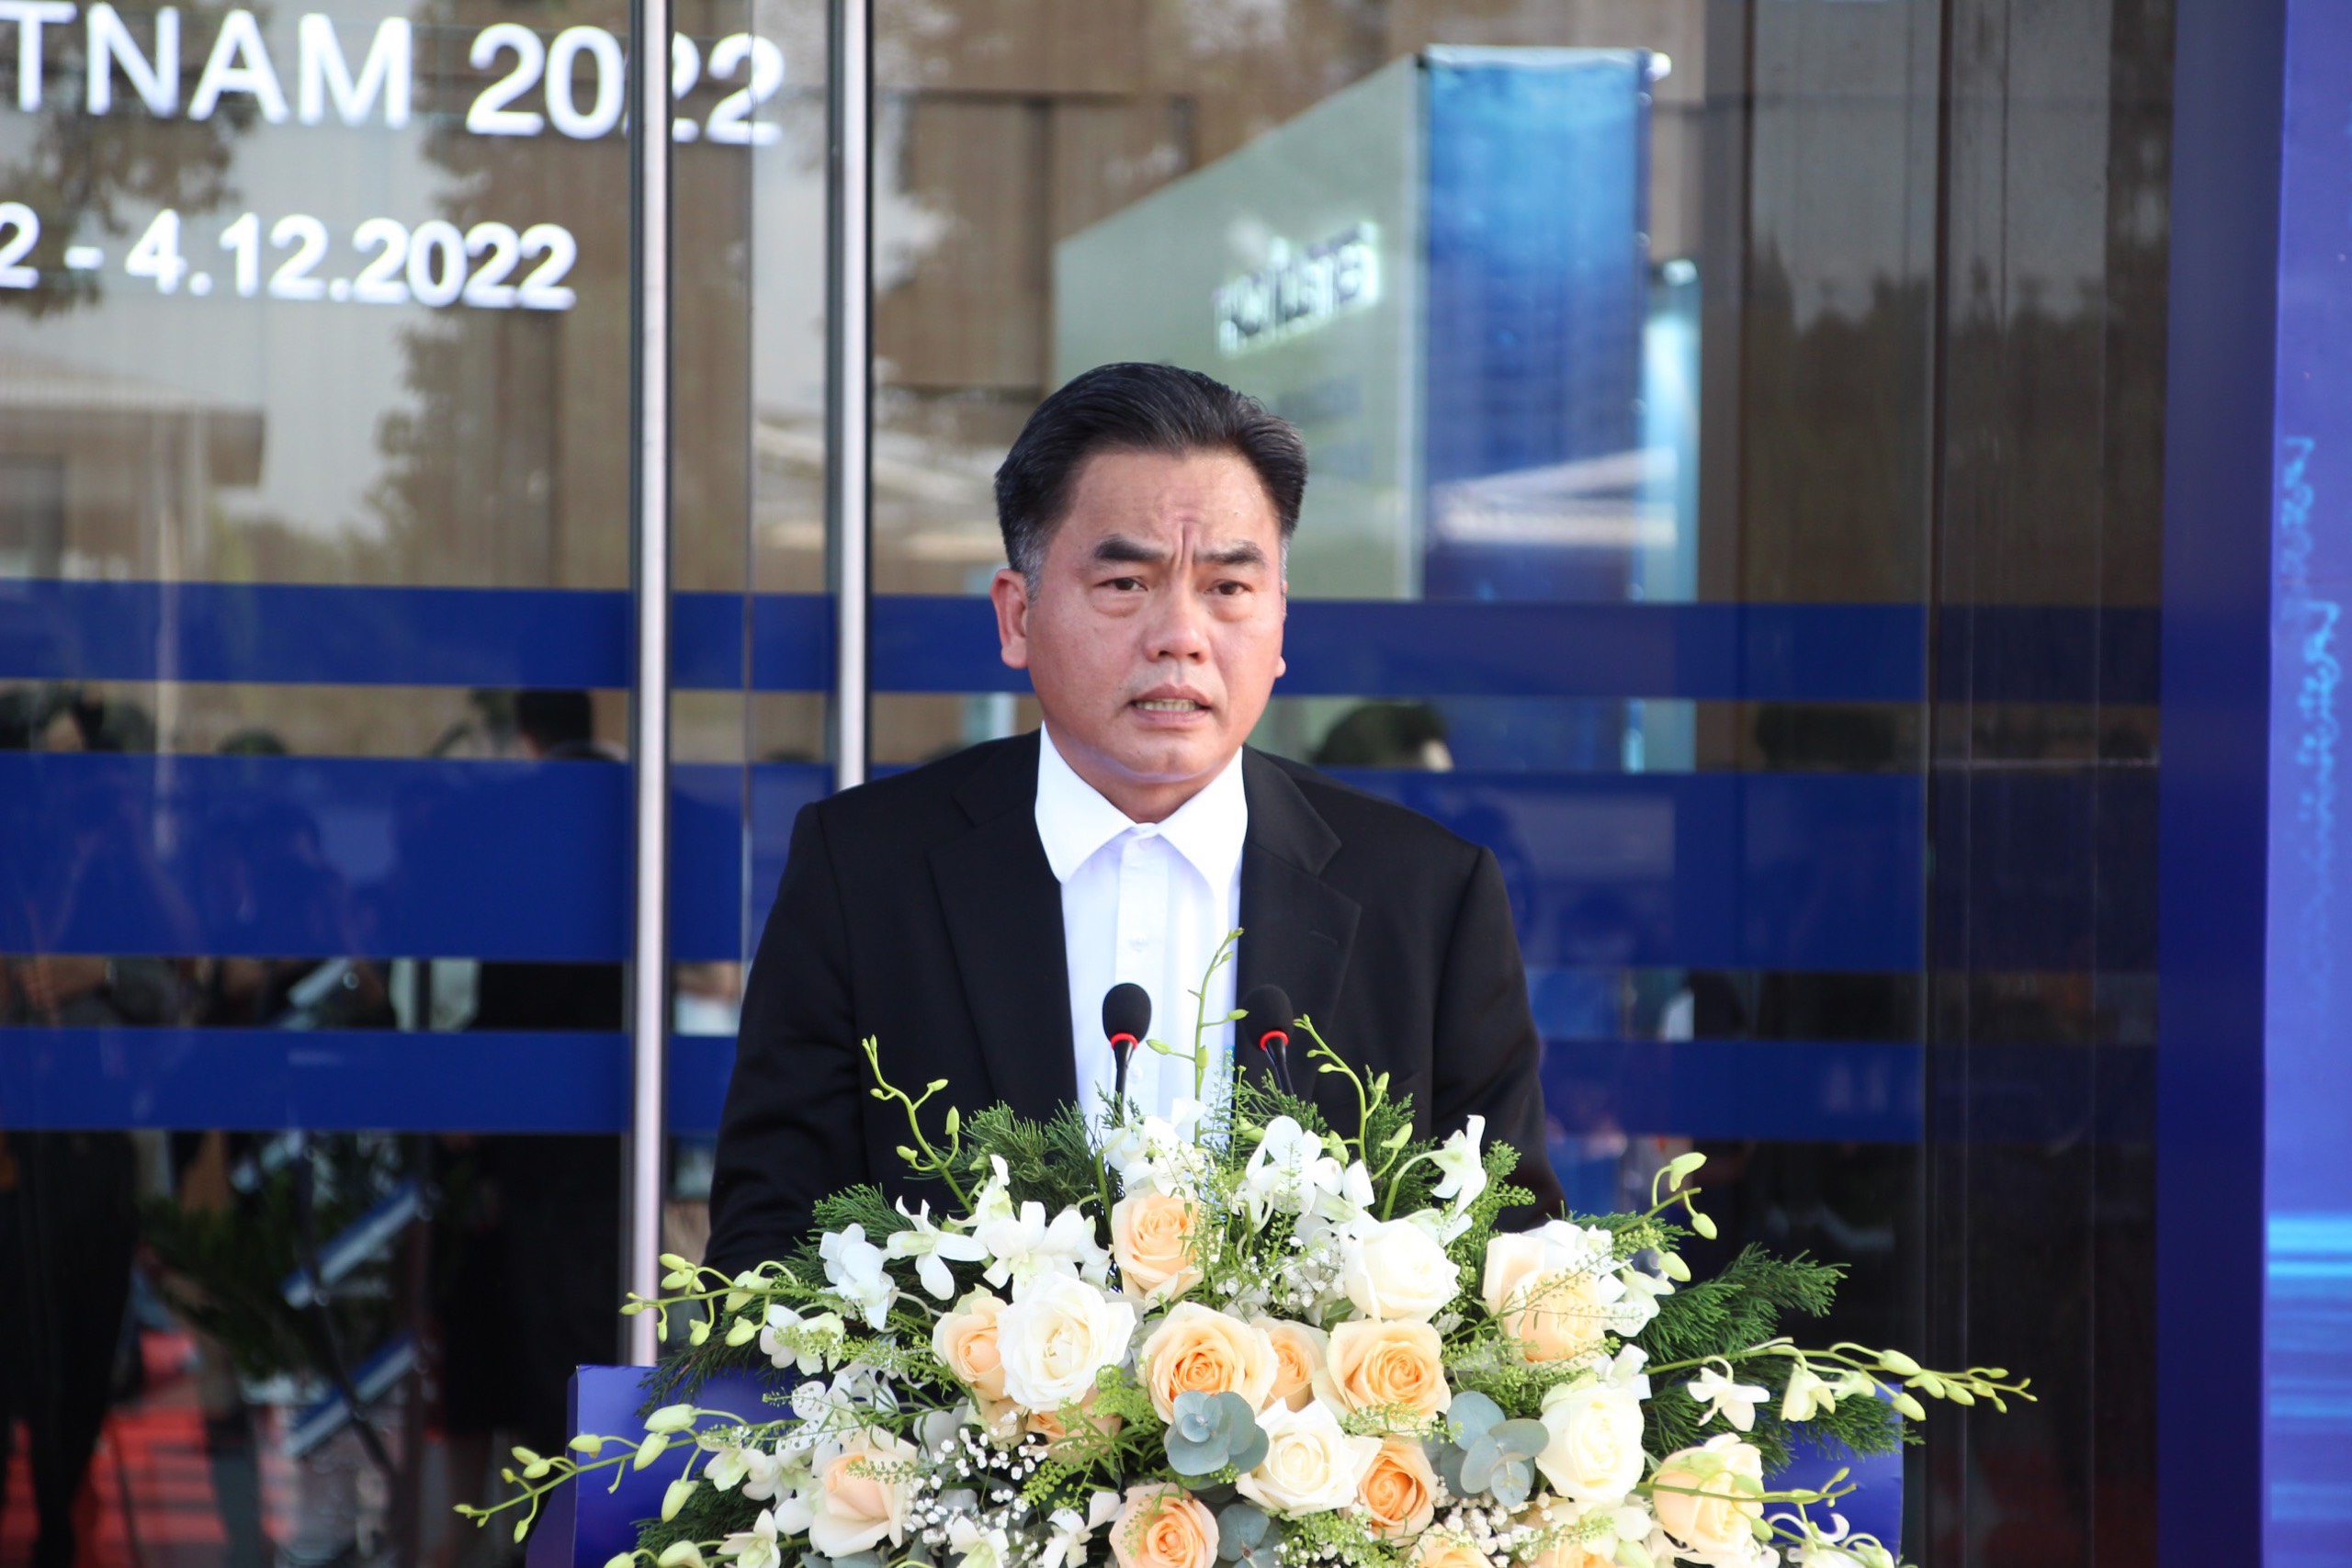 Đồng chí Nguyễn Lộc Hà – Phó Chủ tịch UBND tỉnh Bình Dương phát biểu tại lễ khai mạc ngày hội Techfest VietNam 2022.